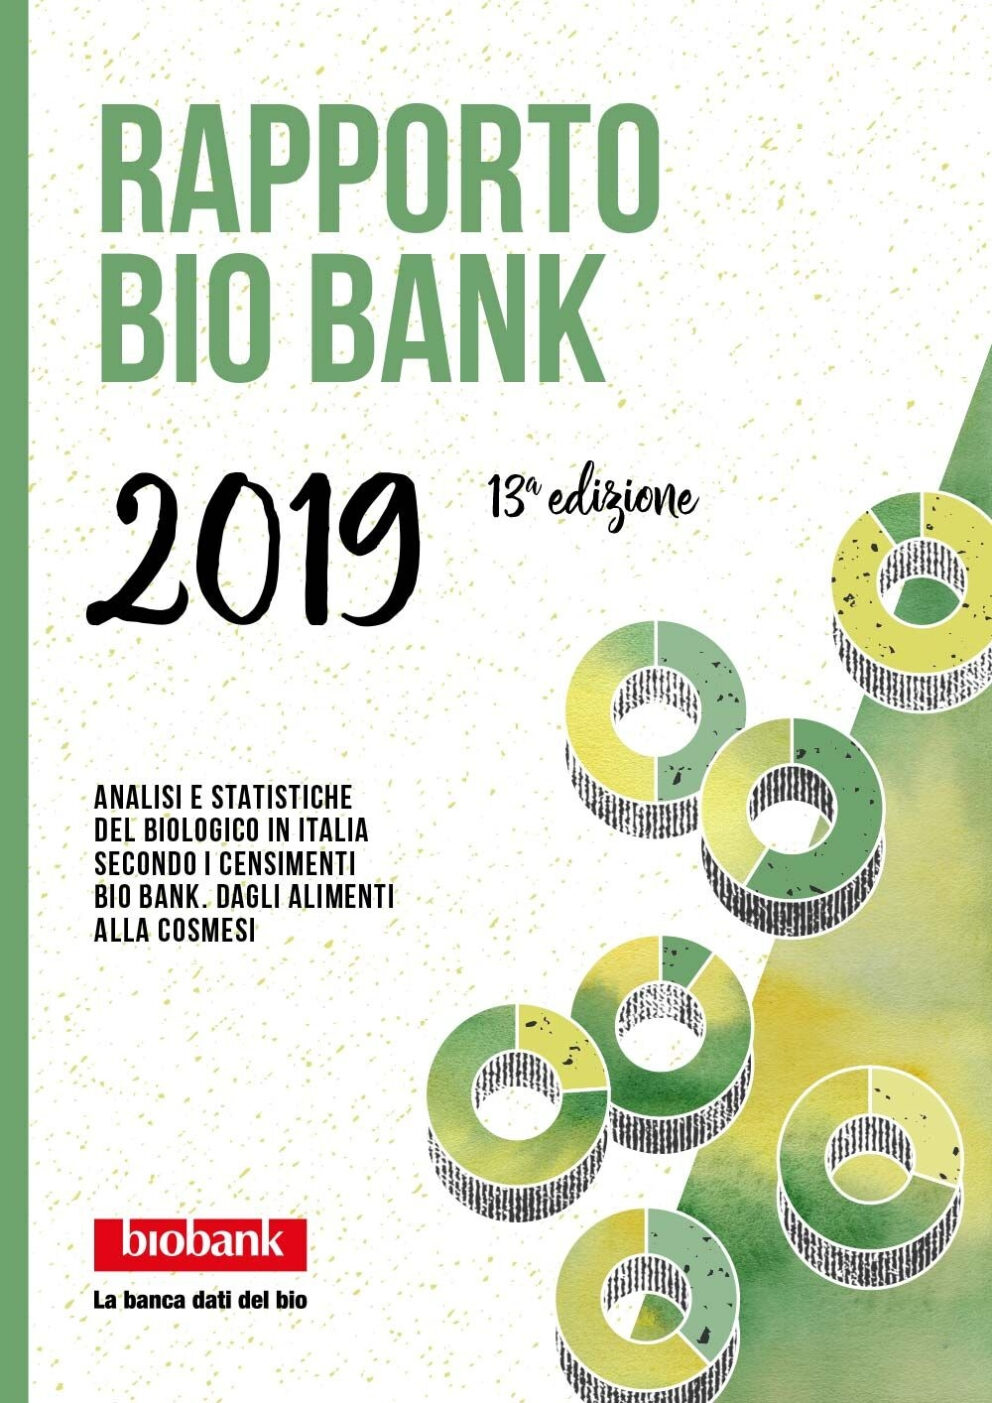 Rapporto Bio Bank 2019: nel cambiamento del mercato, il bio cresce